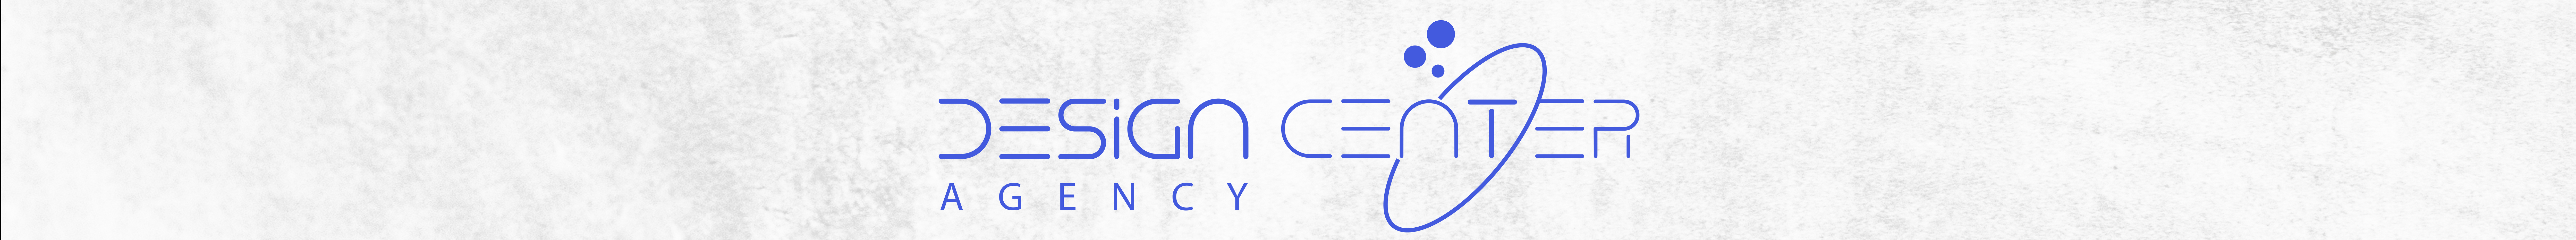 Design Center Agency's profile banner